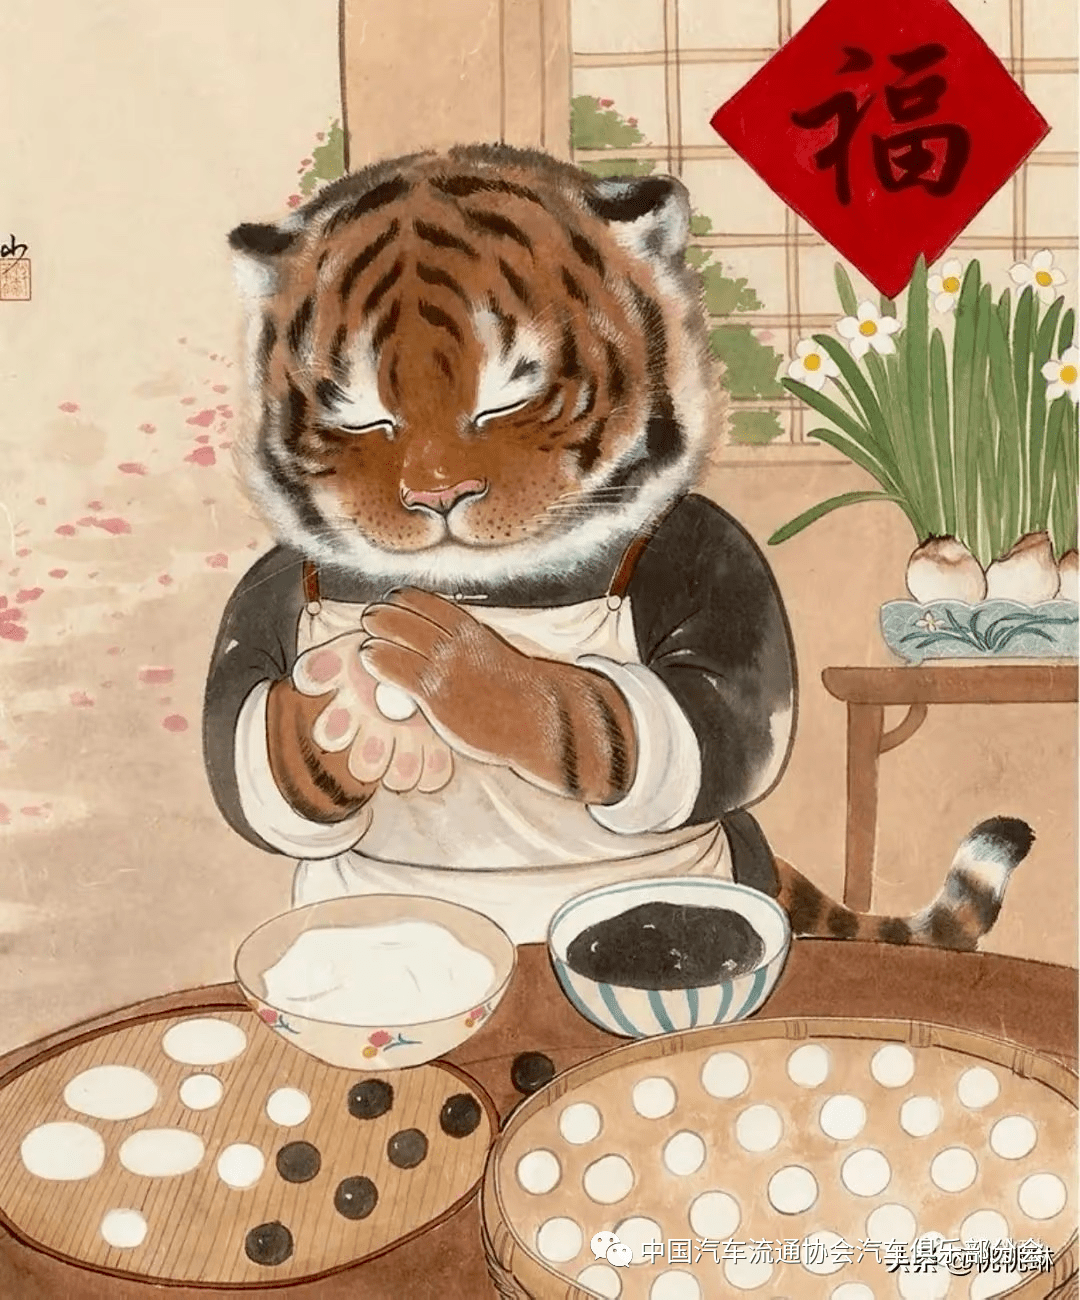 老虎包饺子的卡通图案图片